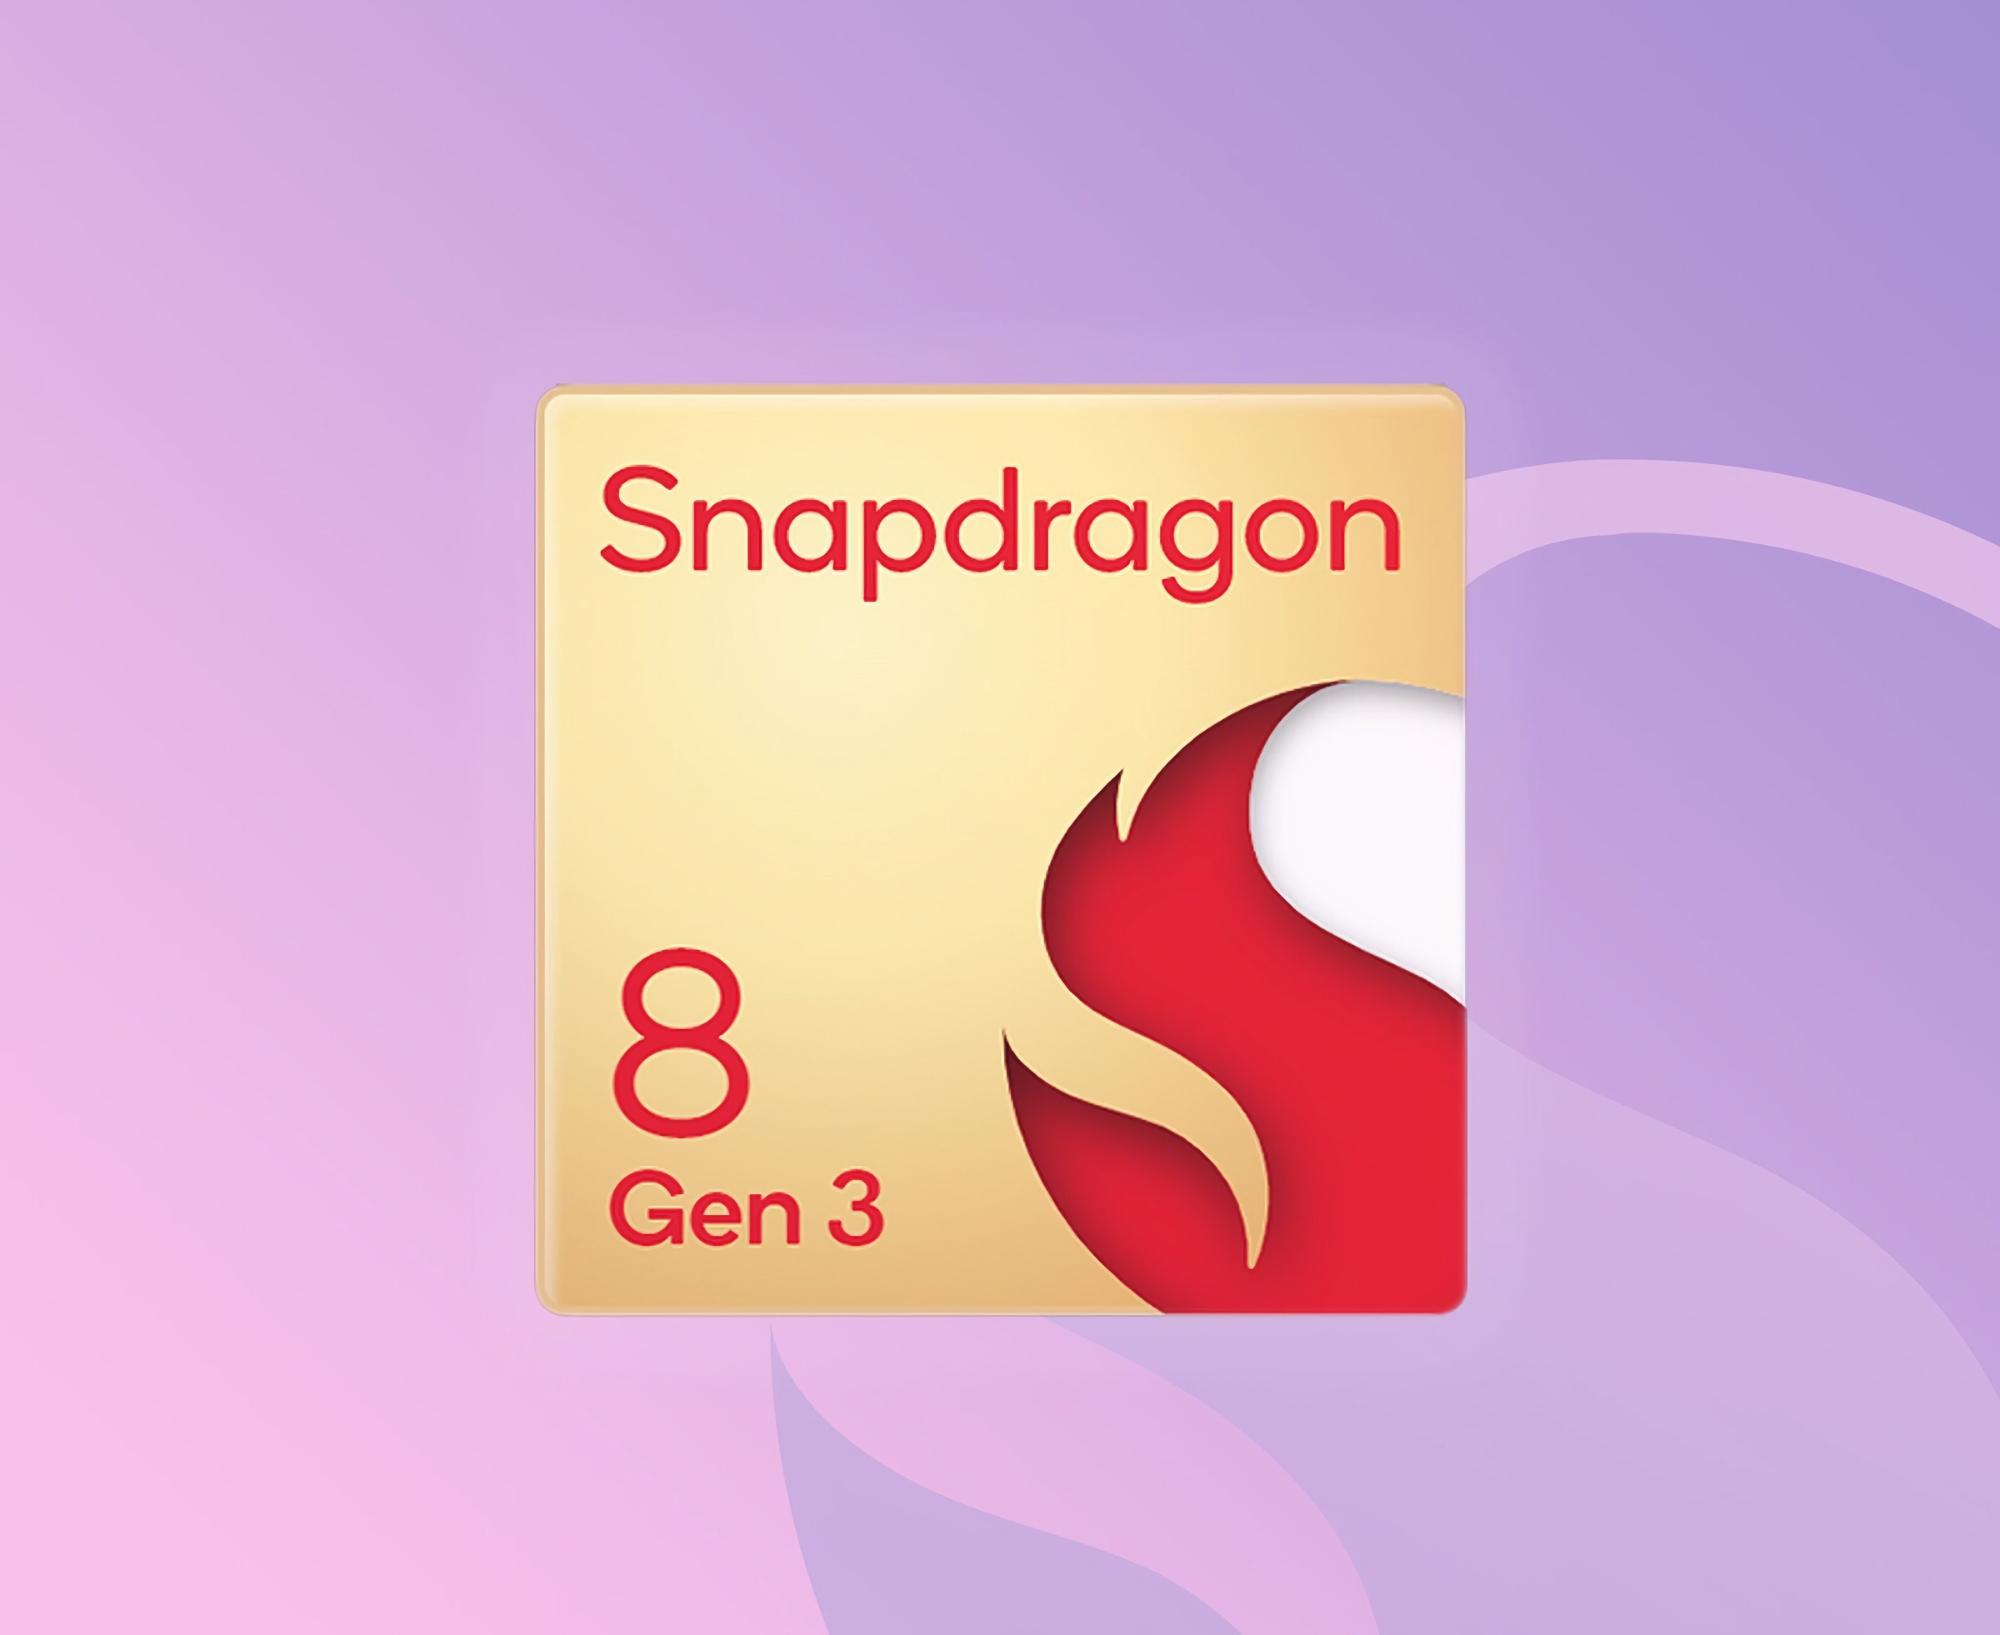 Nu er det officielt: Qualcomm afslører Snapdragon 8 Gen 3-chippen ved et event den 25.-26. oktober.